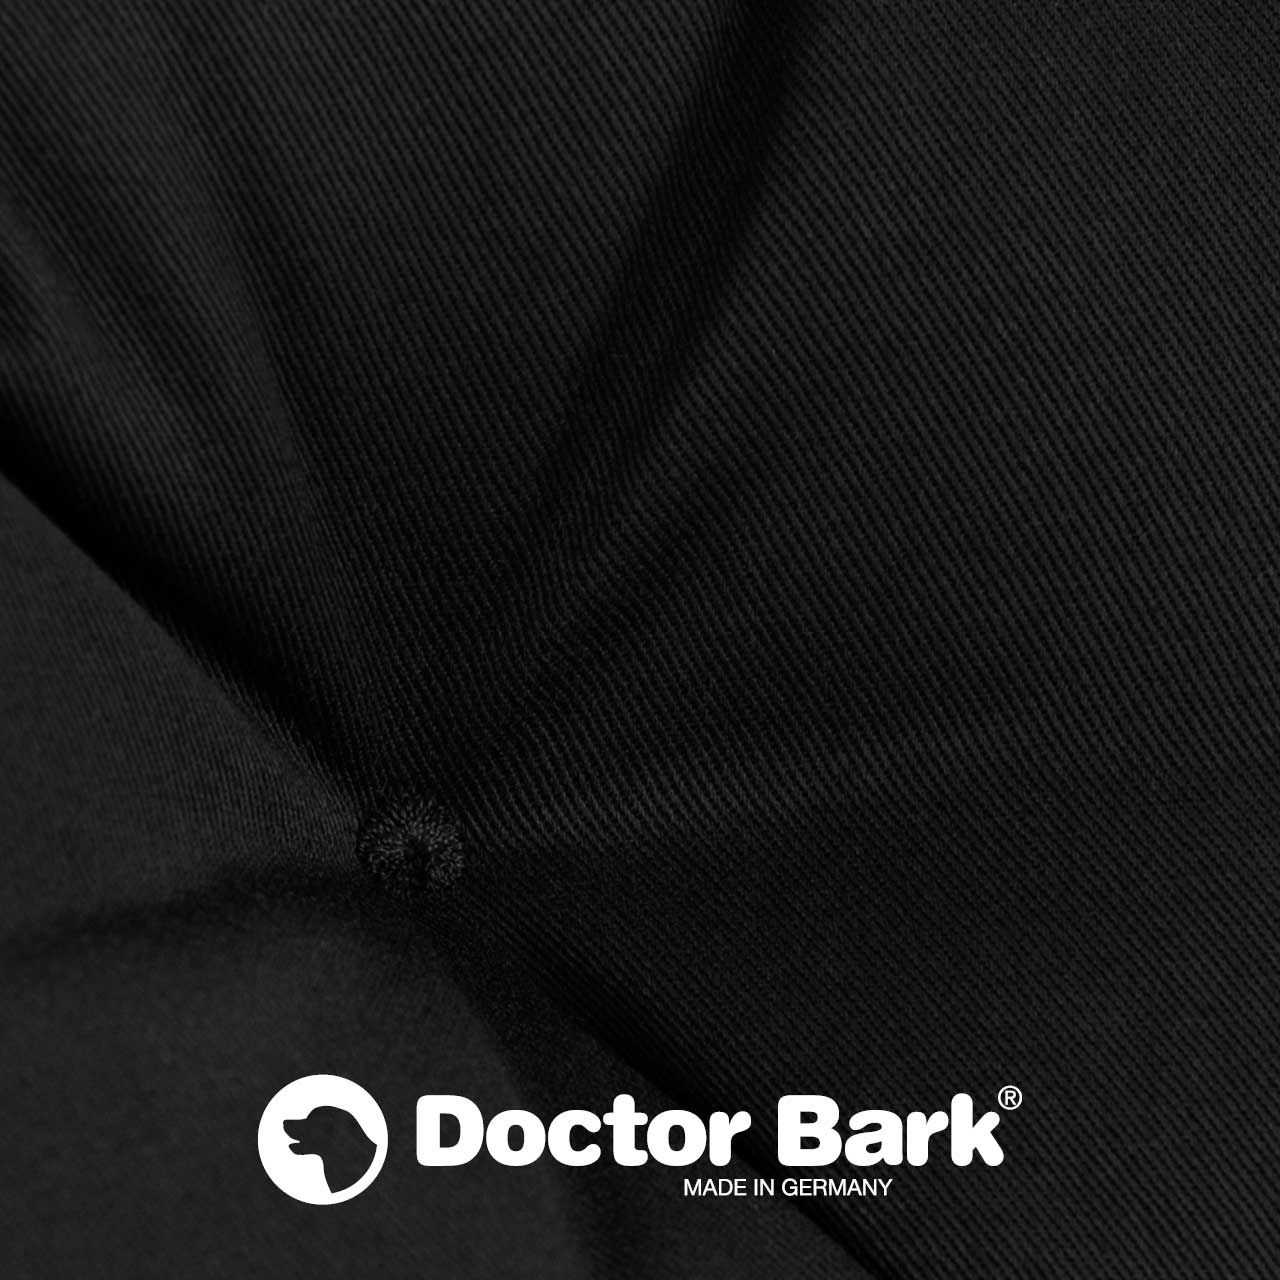 Beste Verarbeitung bei Doctor Bark